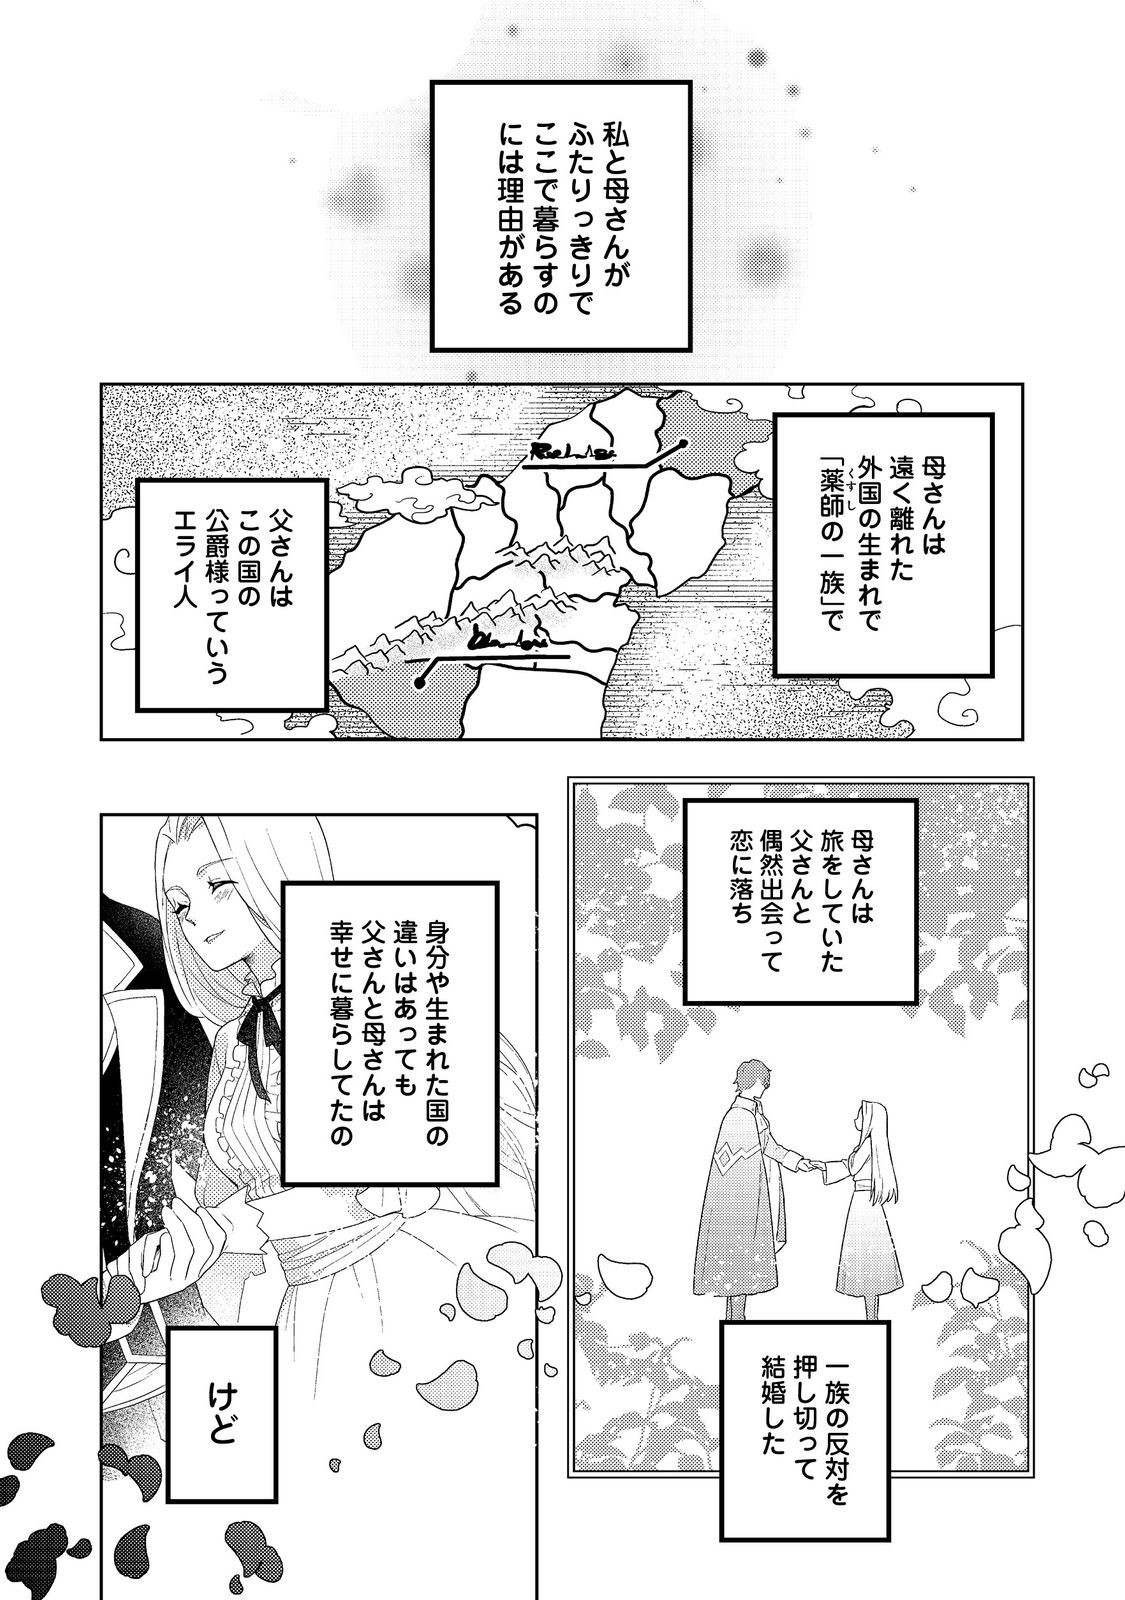 Mori no Hashikko no Chibi Majo-san - Chapter 1 - Page 14